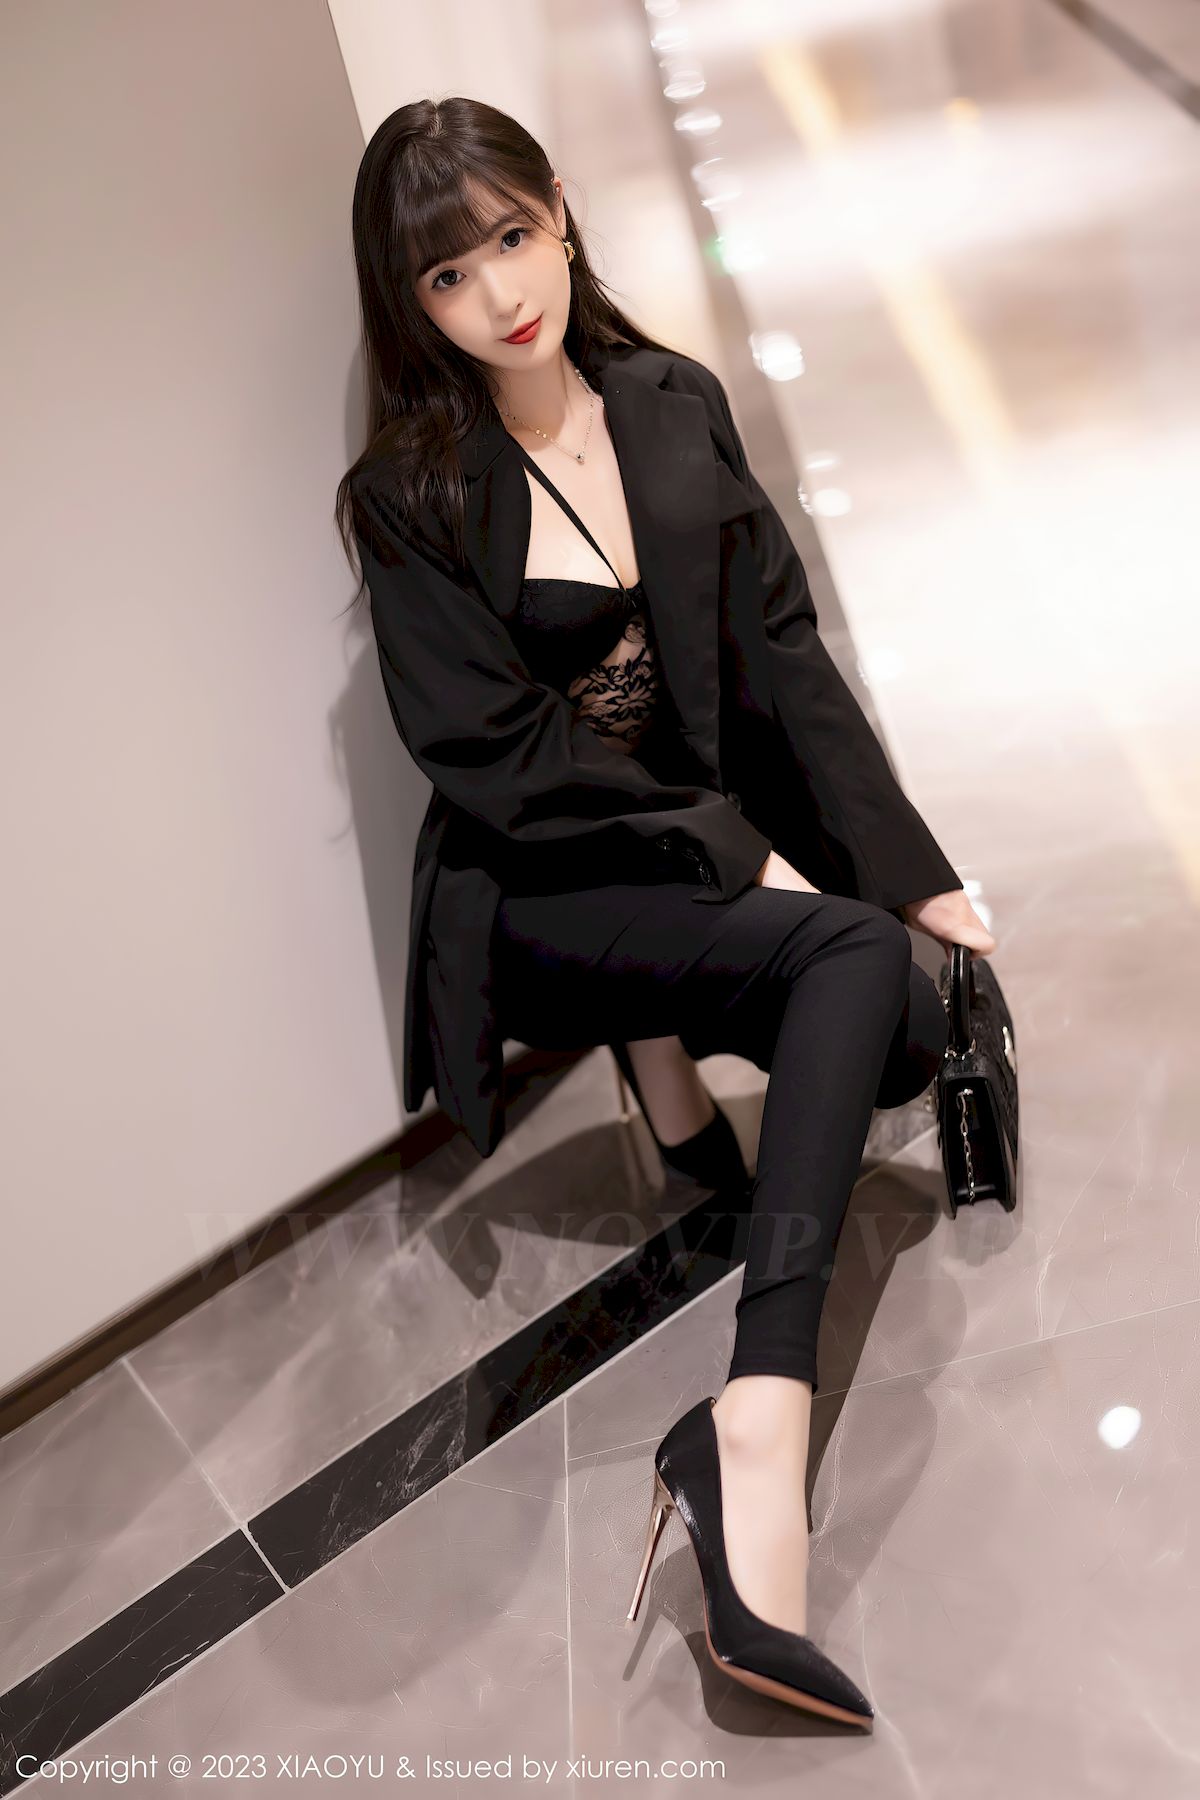 林星阑黑色服饰搭配原色丝袜性感写真